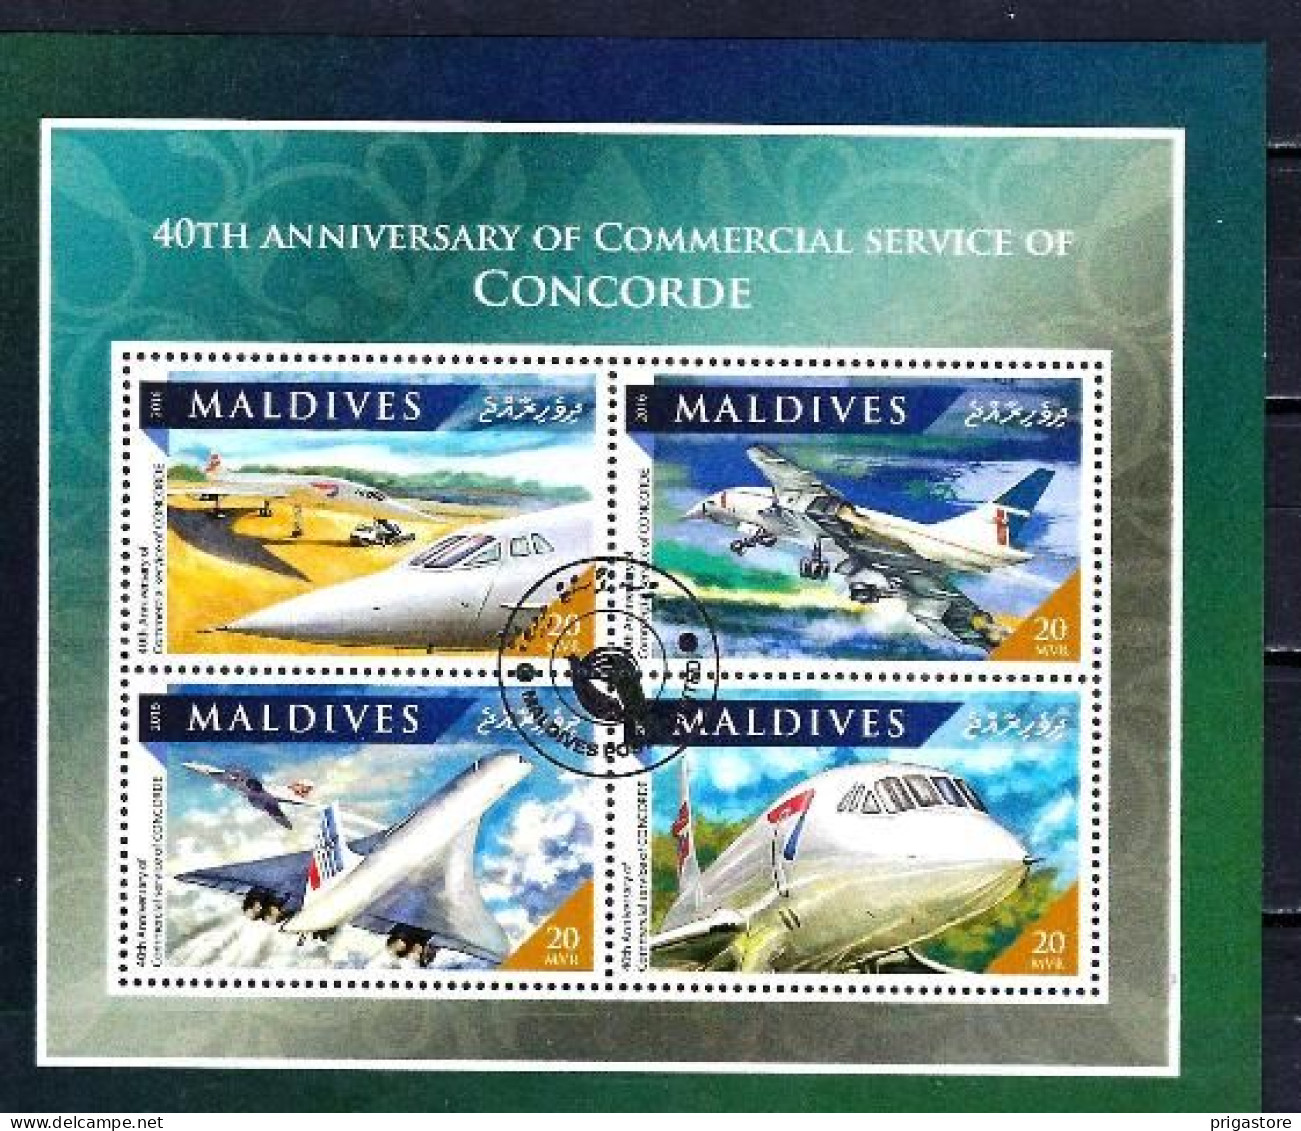 Maldives 2016 Avions Concorde (75) Yvert N° 5550 à 5553 Feuillet Oblitéré Used - Maldives (1965-...)